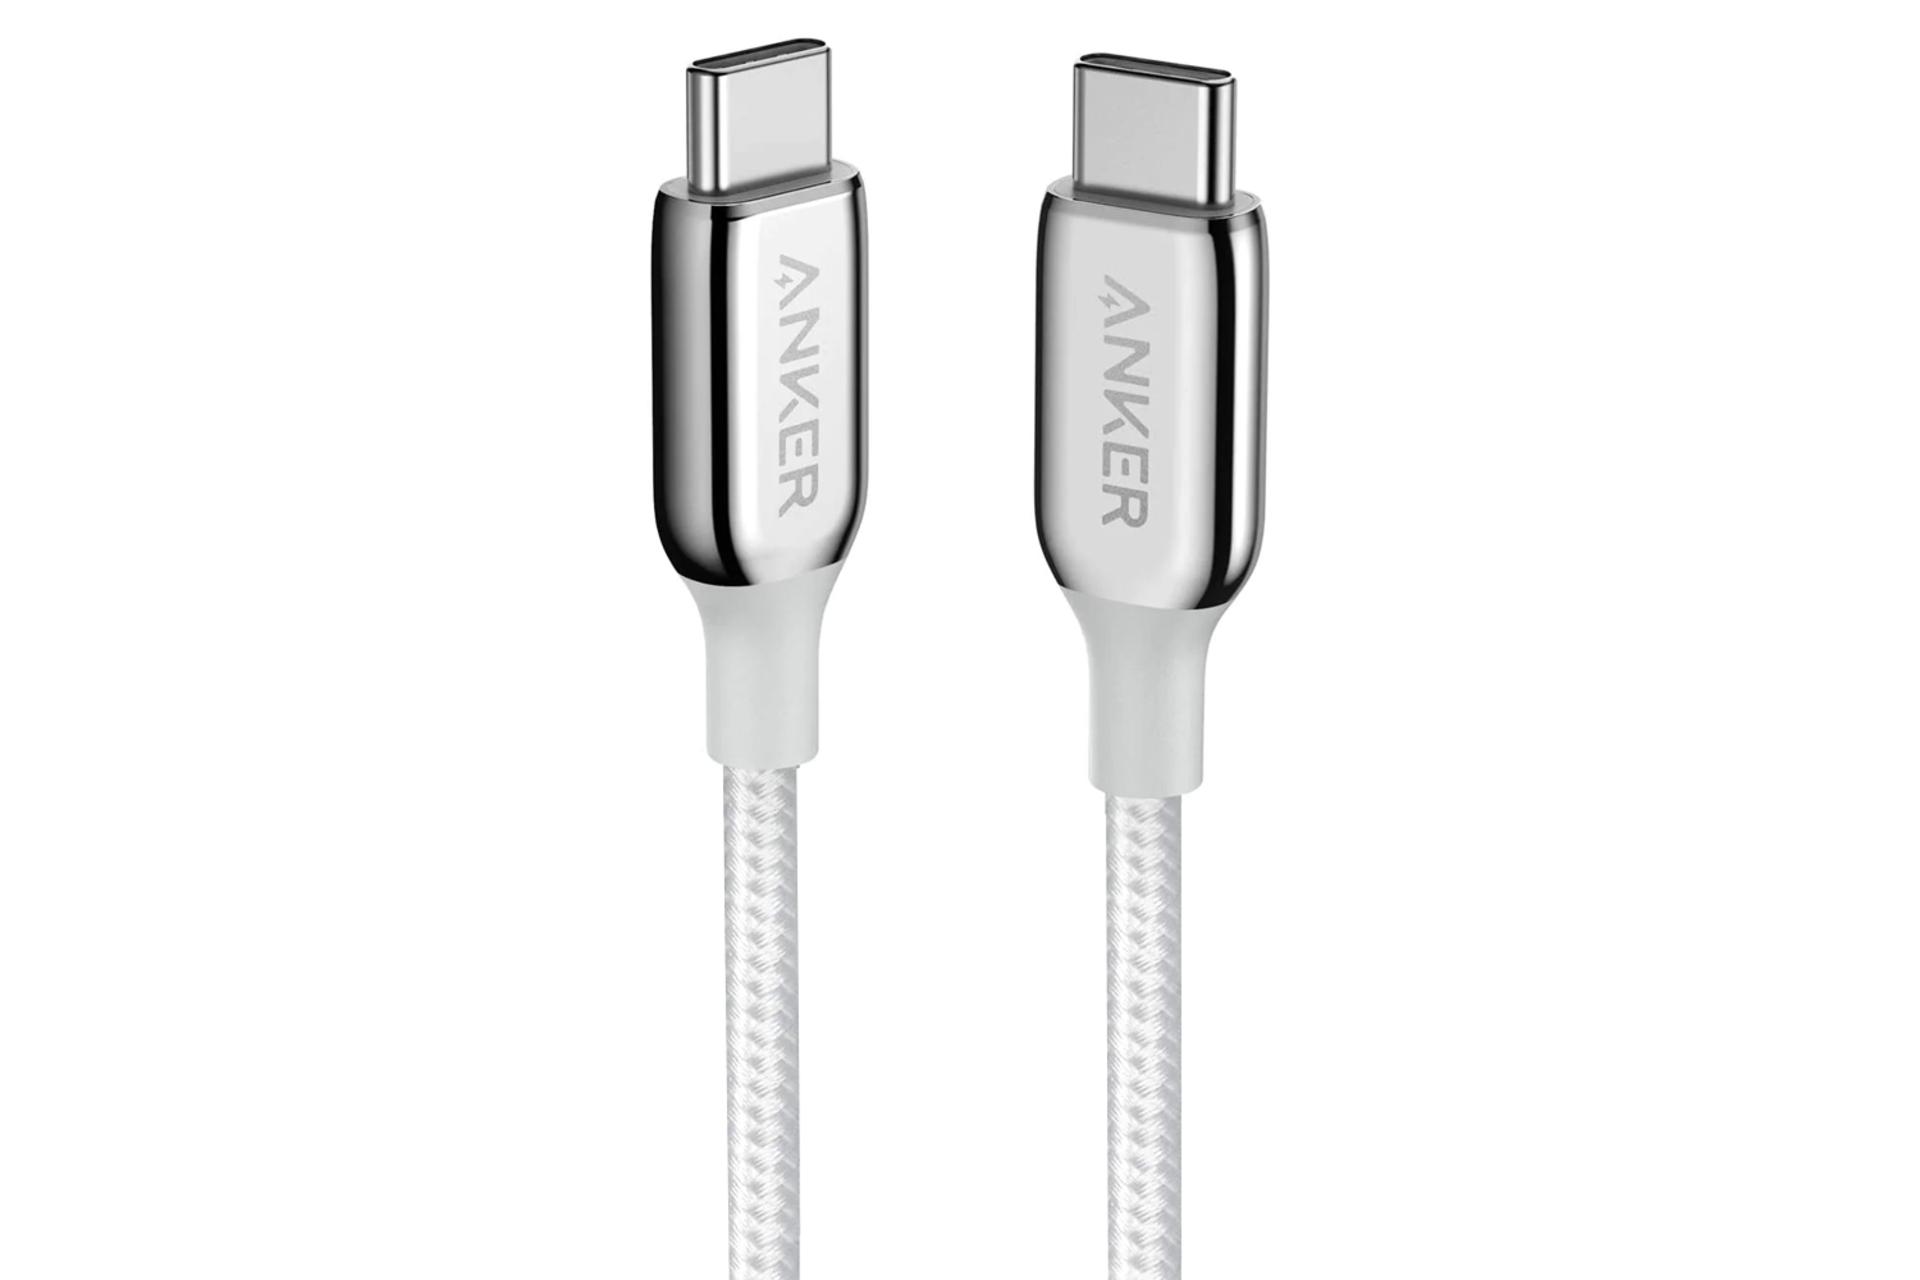 کابل شارژ USB انکر Type-C به Type-C مدل A8863 PowerLine+ III با طول 1.8 متر نقره ای